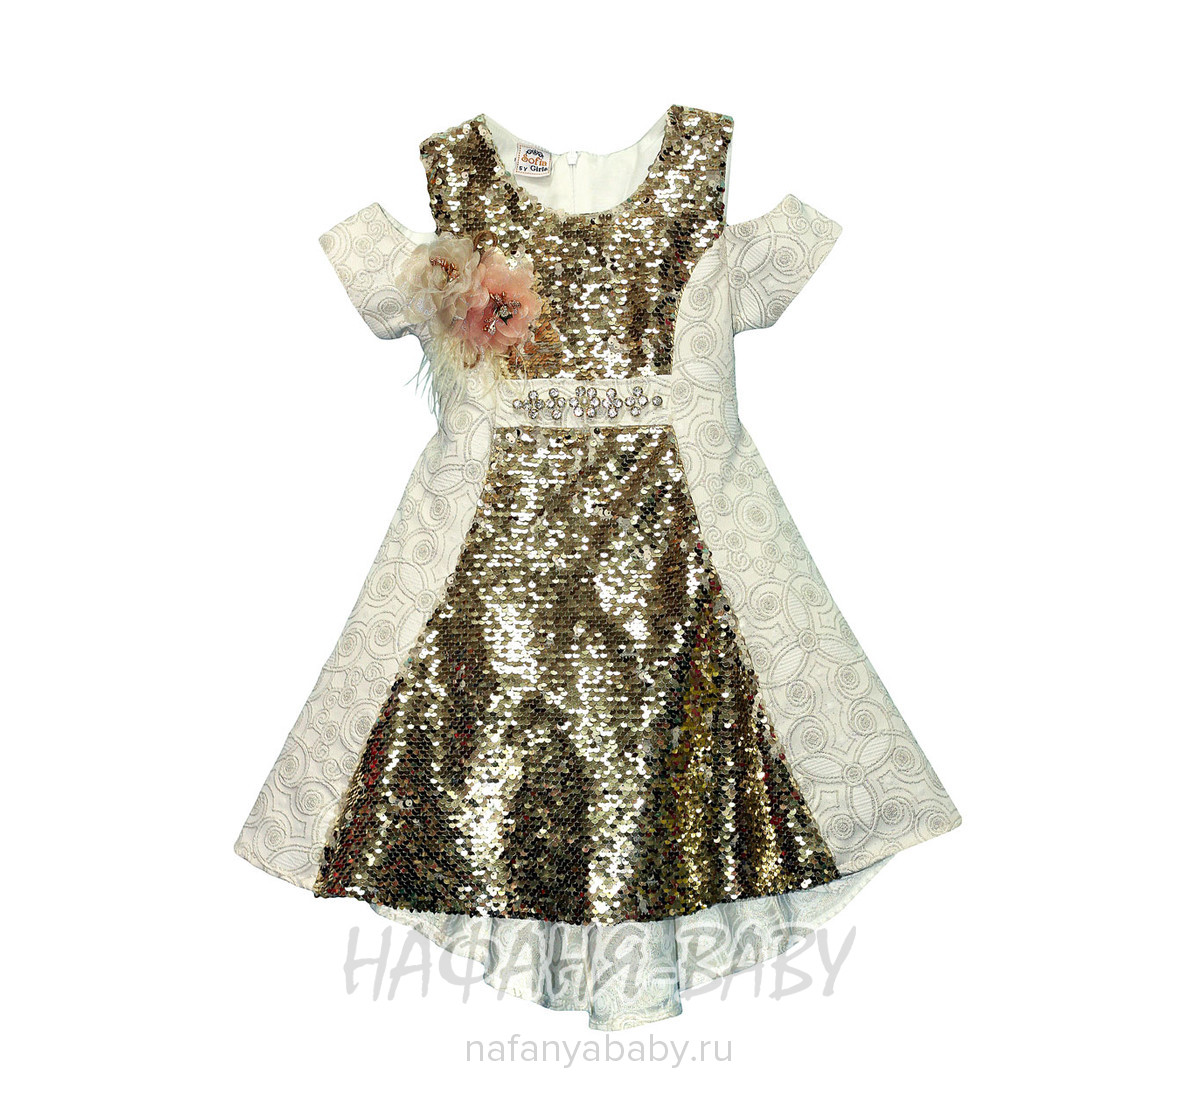 Детское нарядное платье с паетками-перевертышами SOFIA арт: 2378, 5-9 лет, 1-4 года, цвет бежевый, оптом Турция